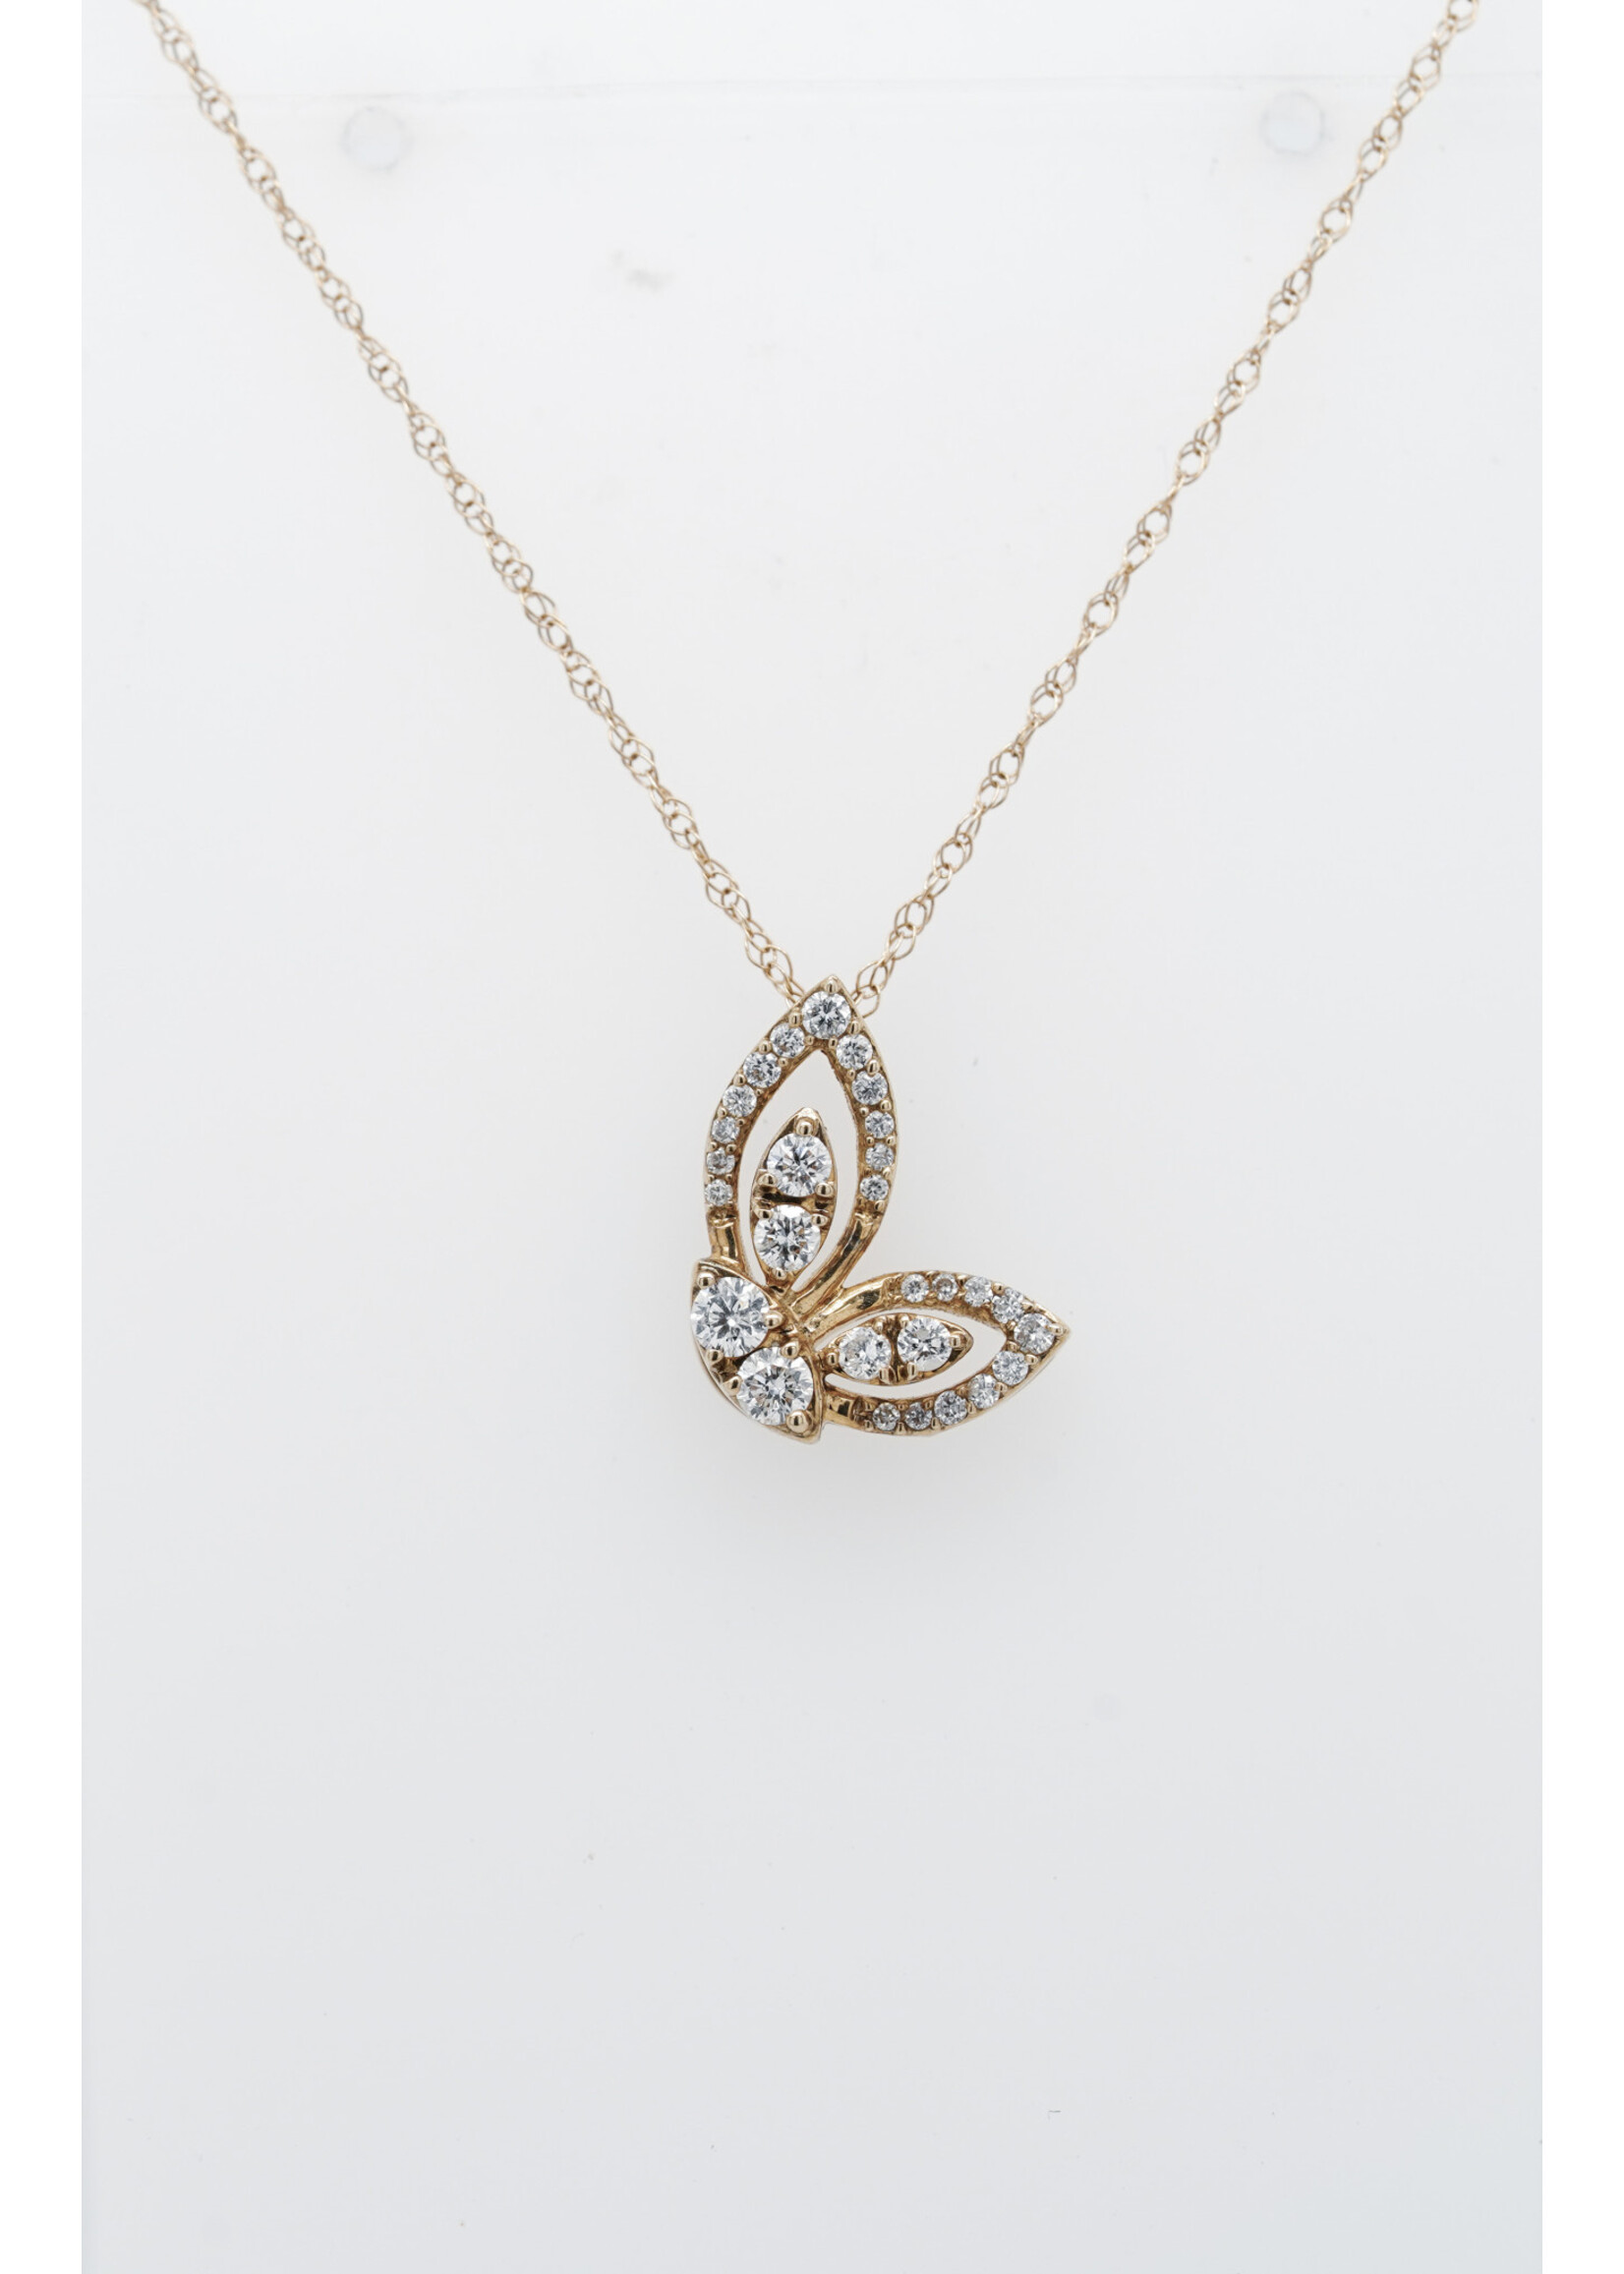 14KY 1.2g .21ctw Diamond Butterfly Necklace 18"